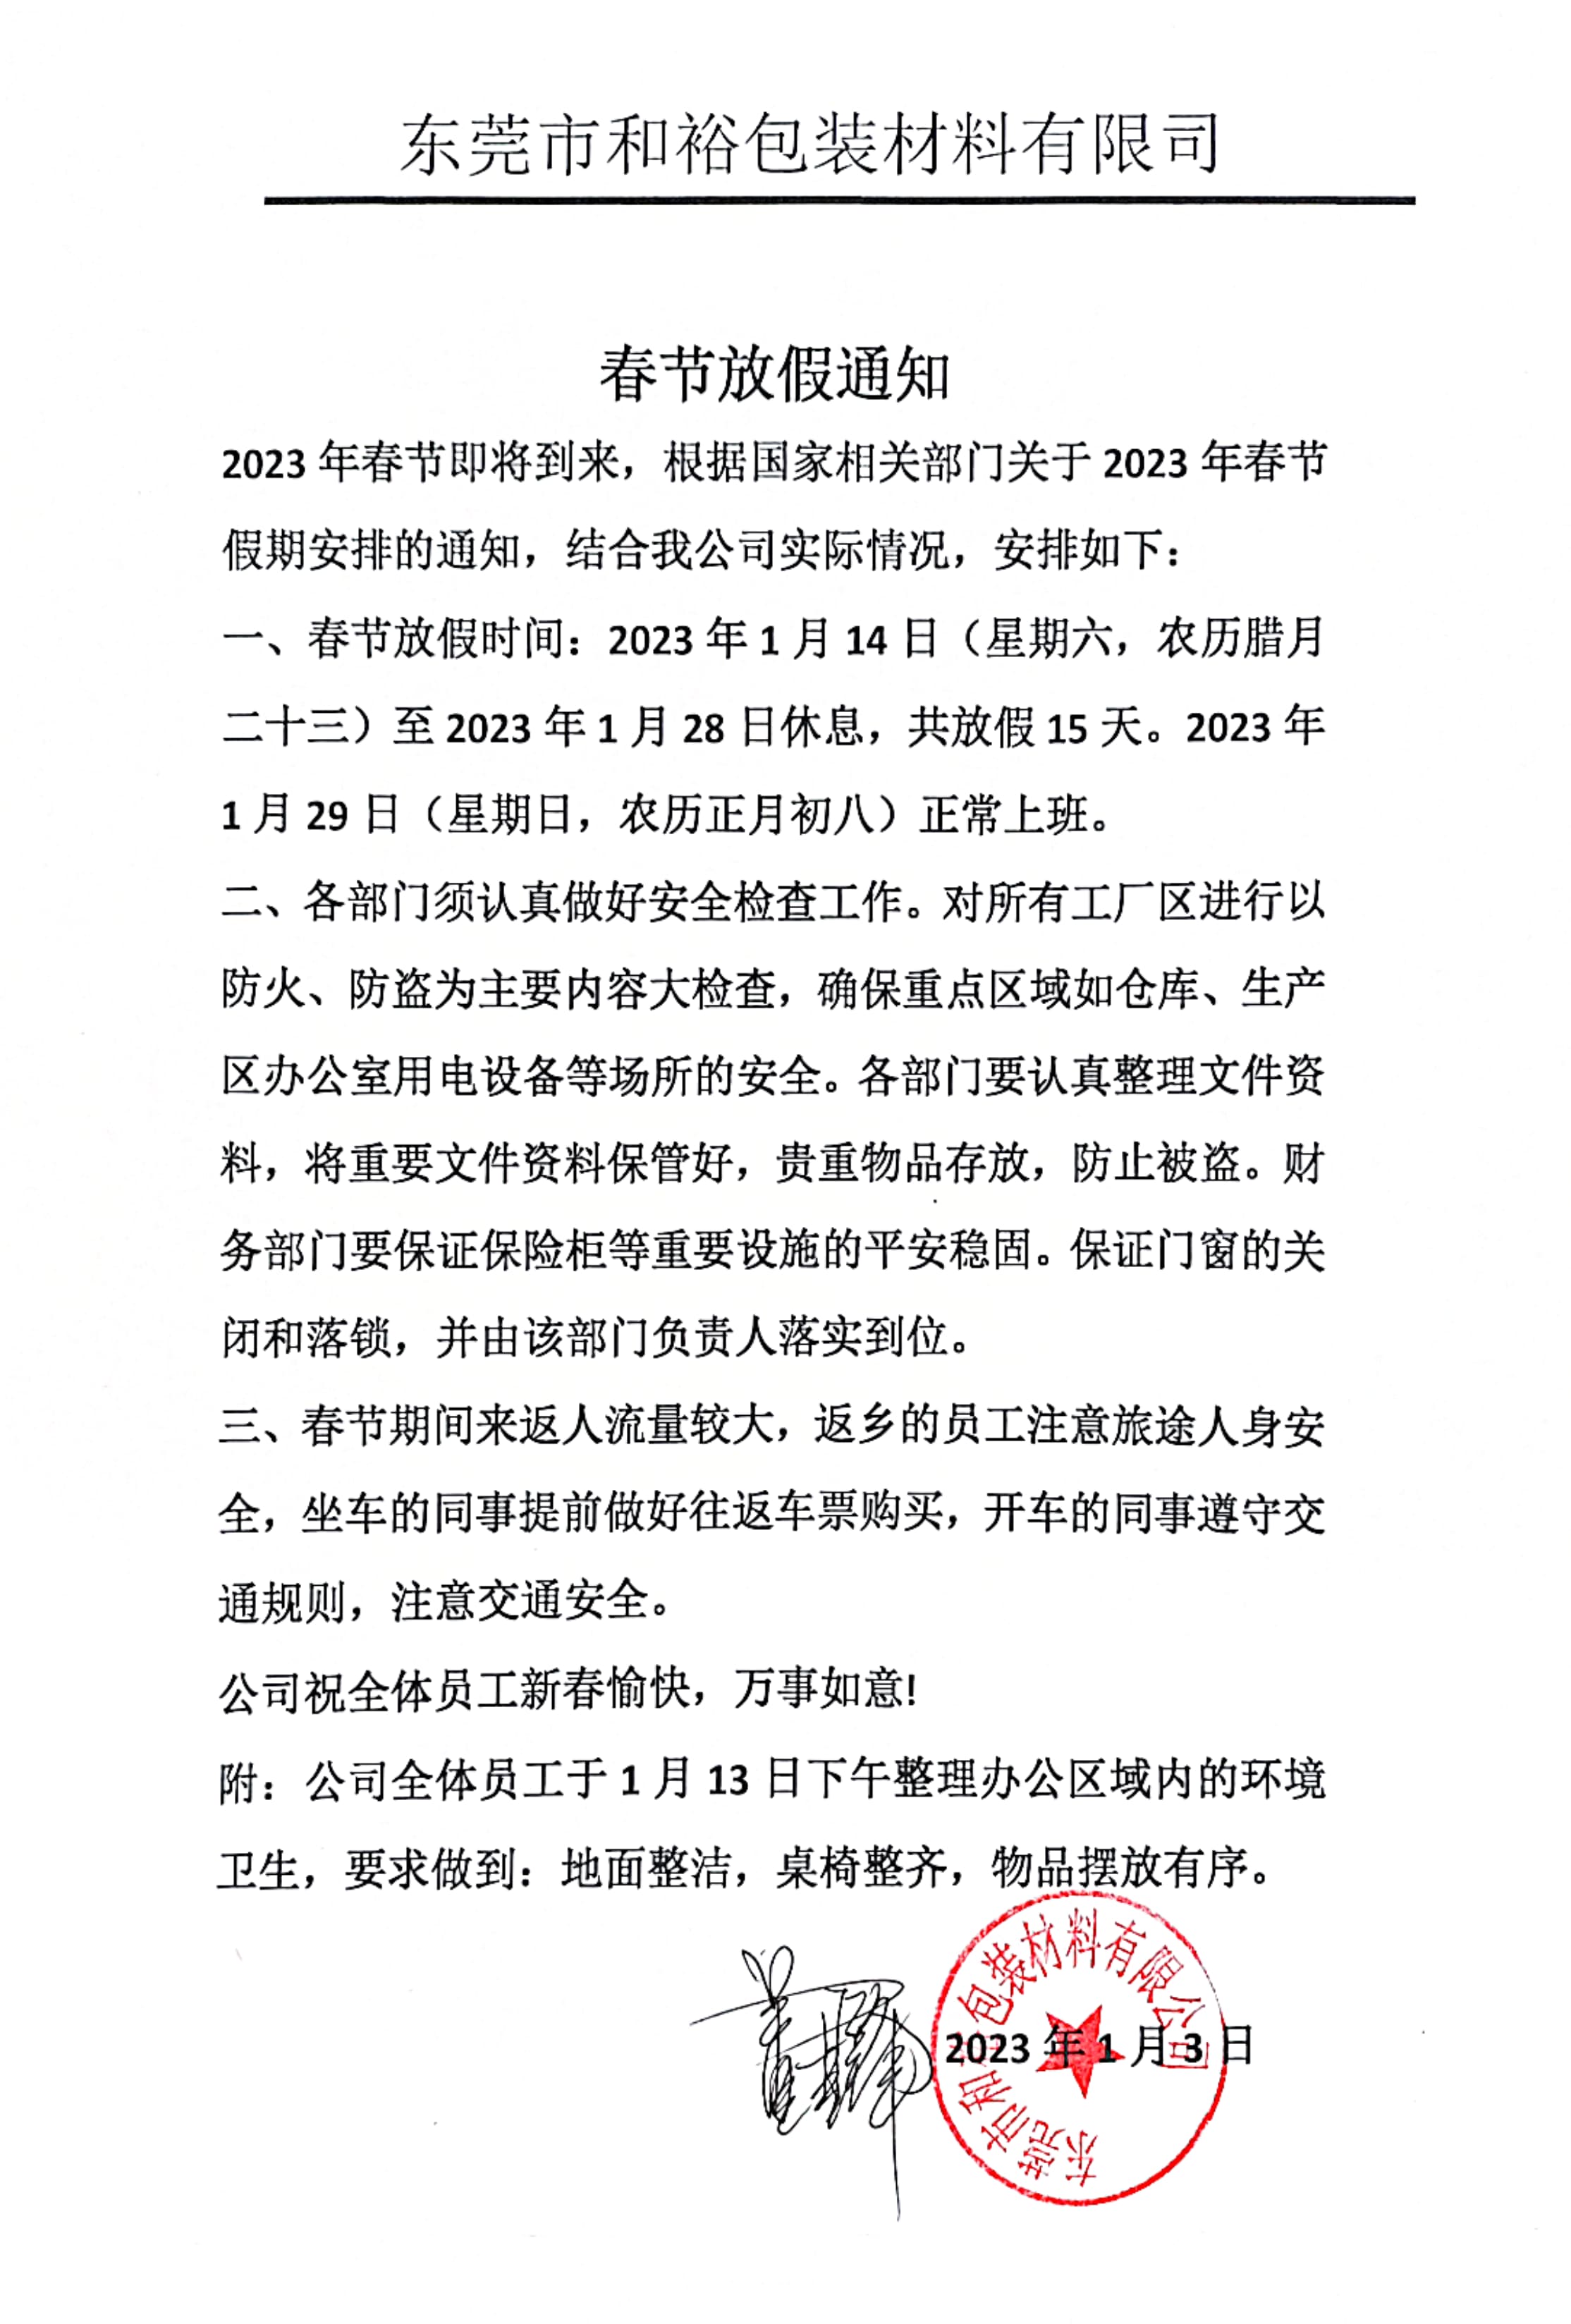 黔江区2023年和裕包装春节放假通知